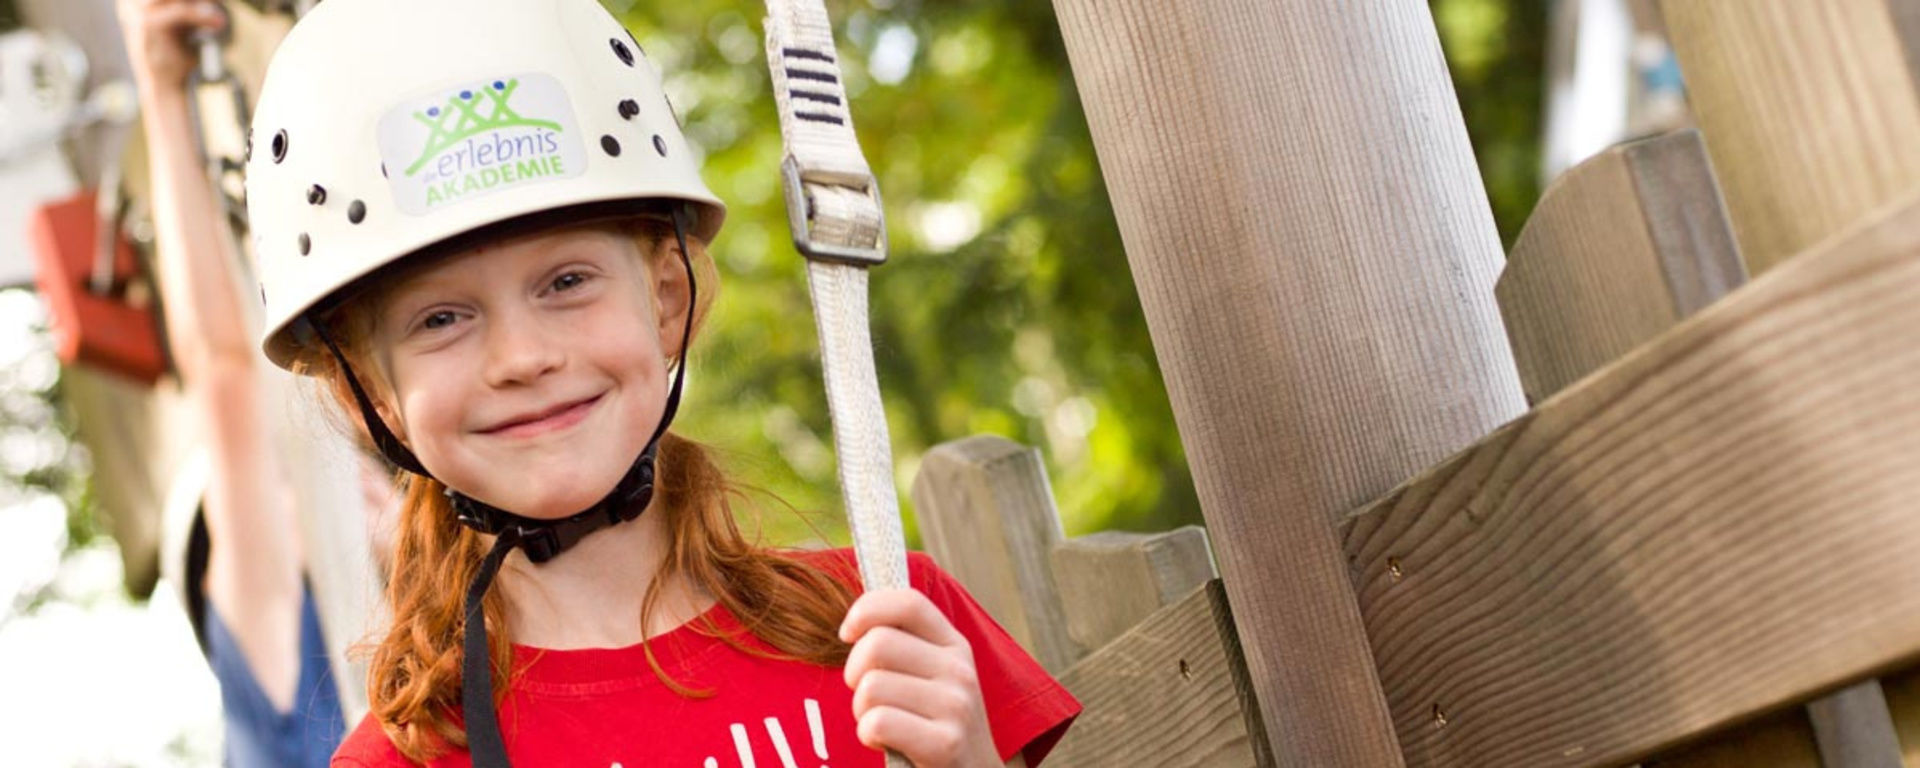 Mädchen grinst beim Klettern im Kletterpark